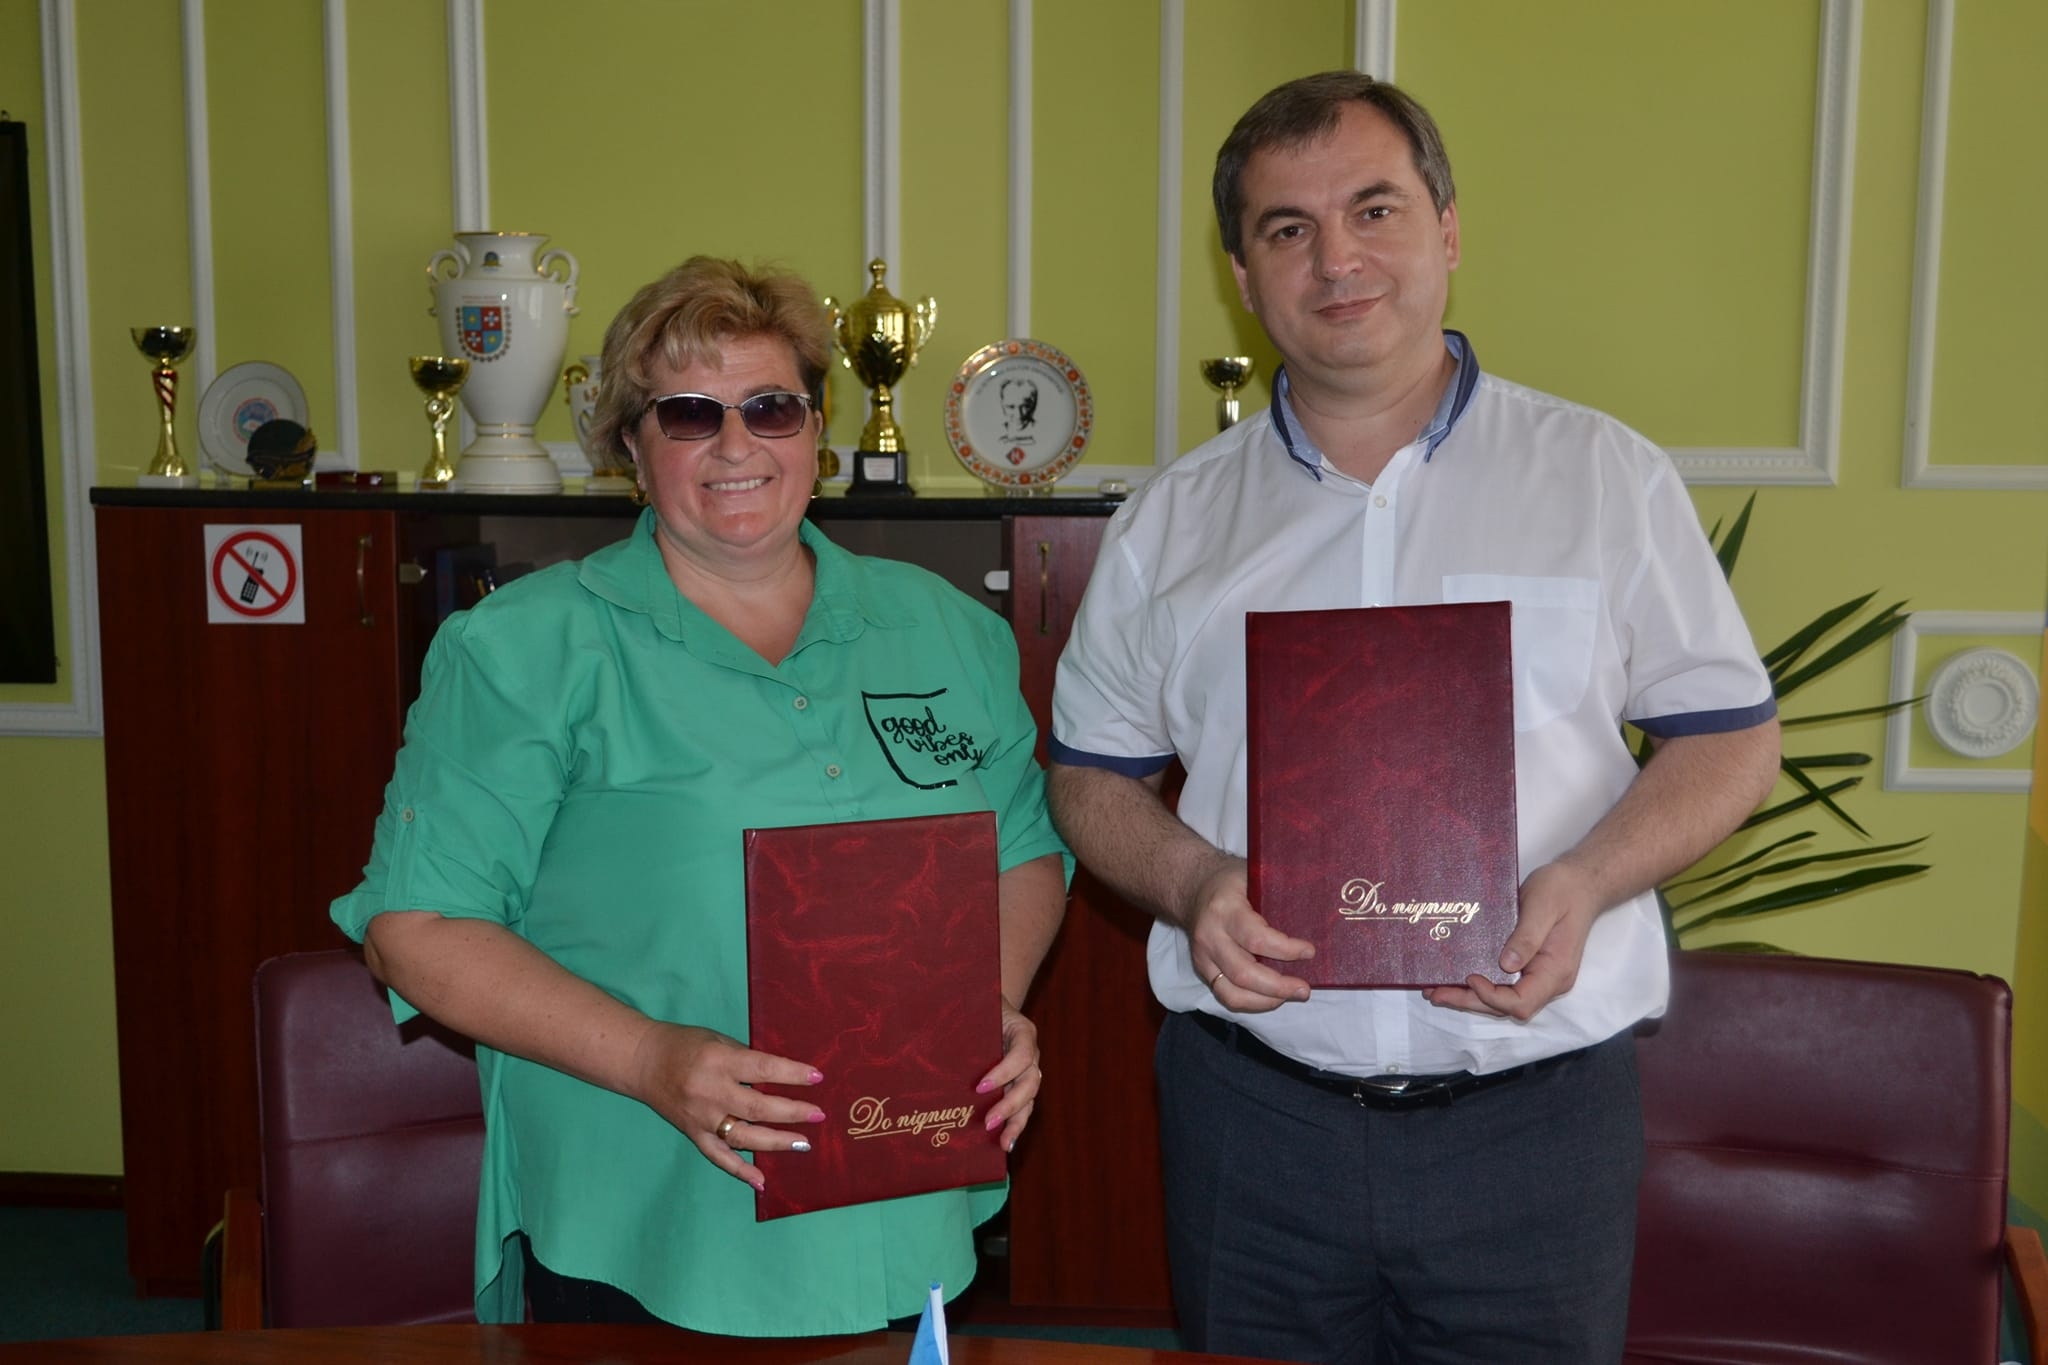 Мізяківсько-Хутірський ліцей підписав угоду про співпрацю з педуніверситетом